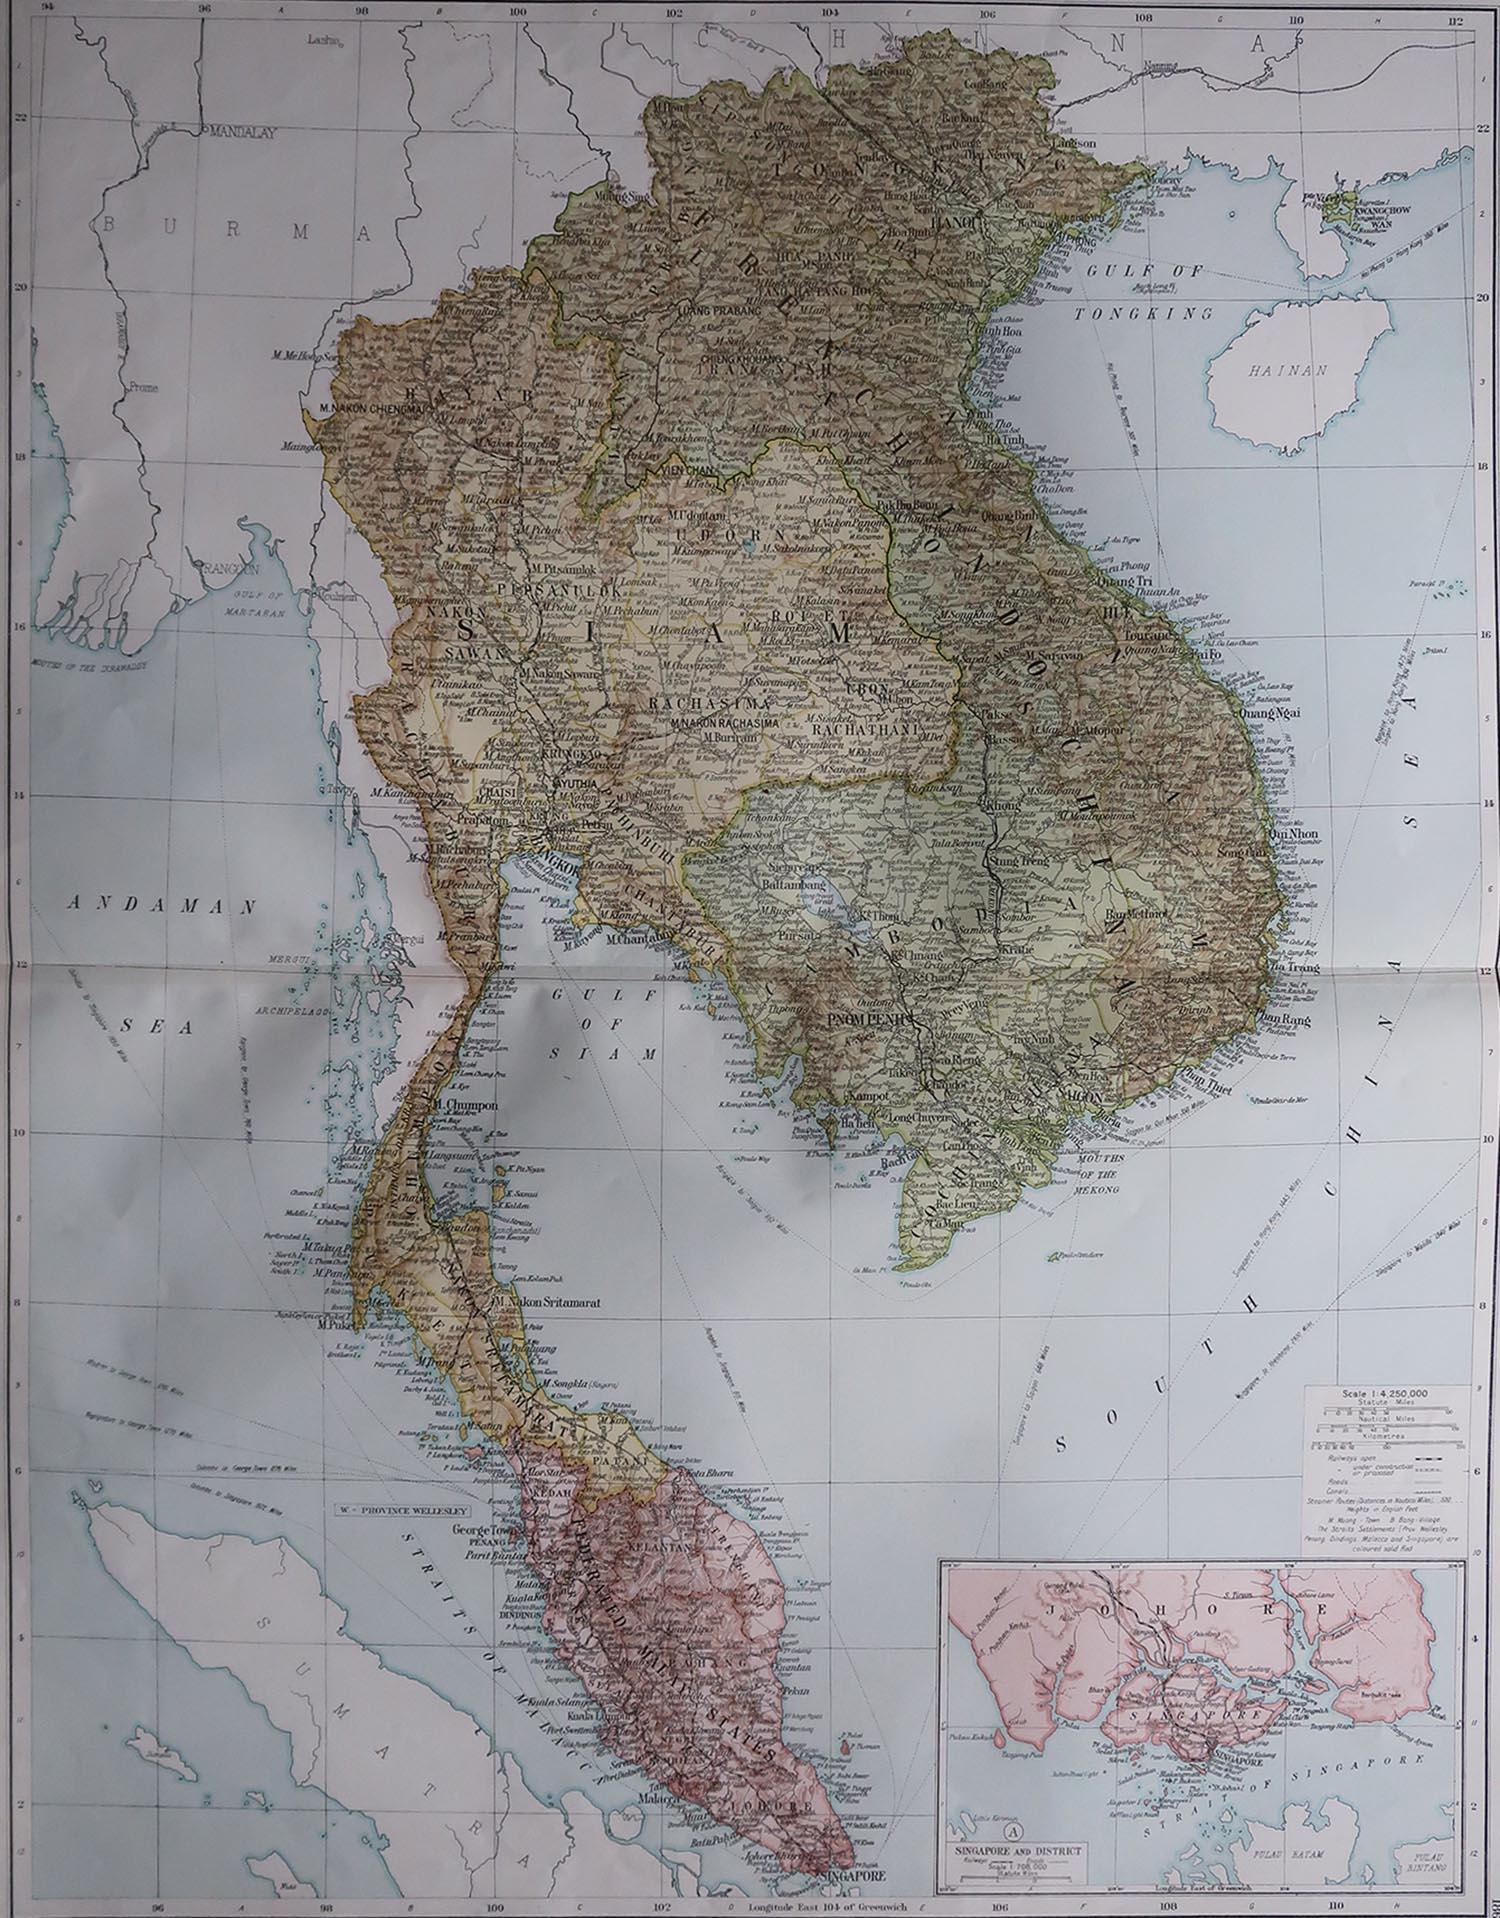 Grande carte de l'Asie du Sud-Est 

Couleur originale. Bon état

Publié par Alexander Gross

Non encadré.








